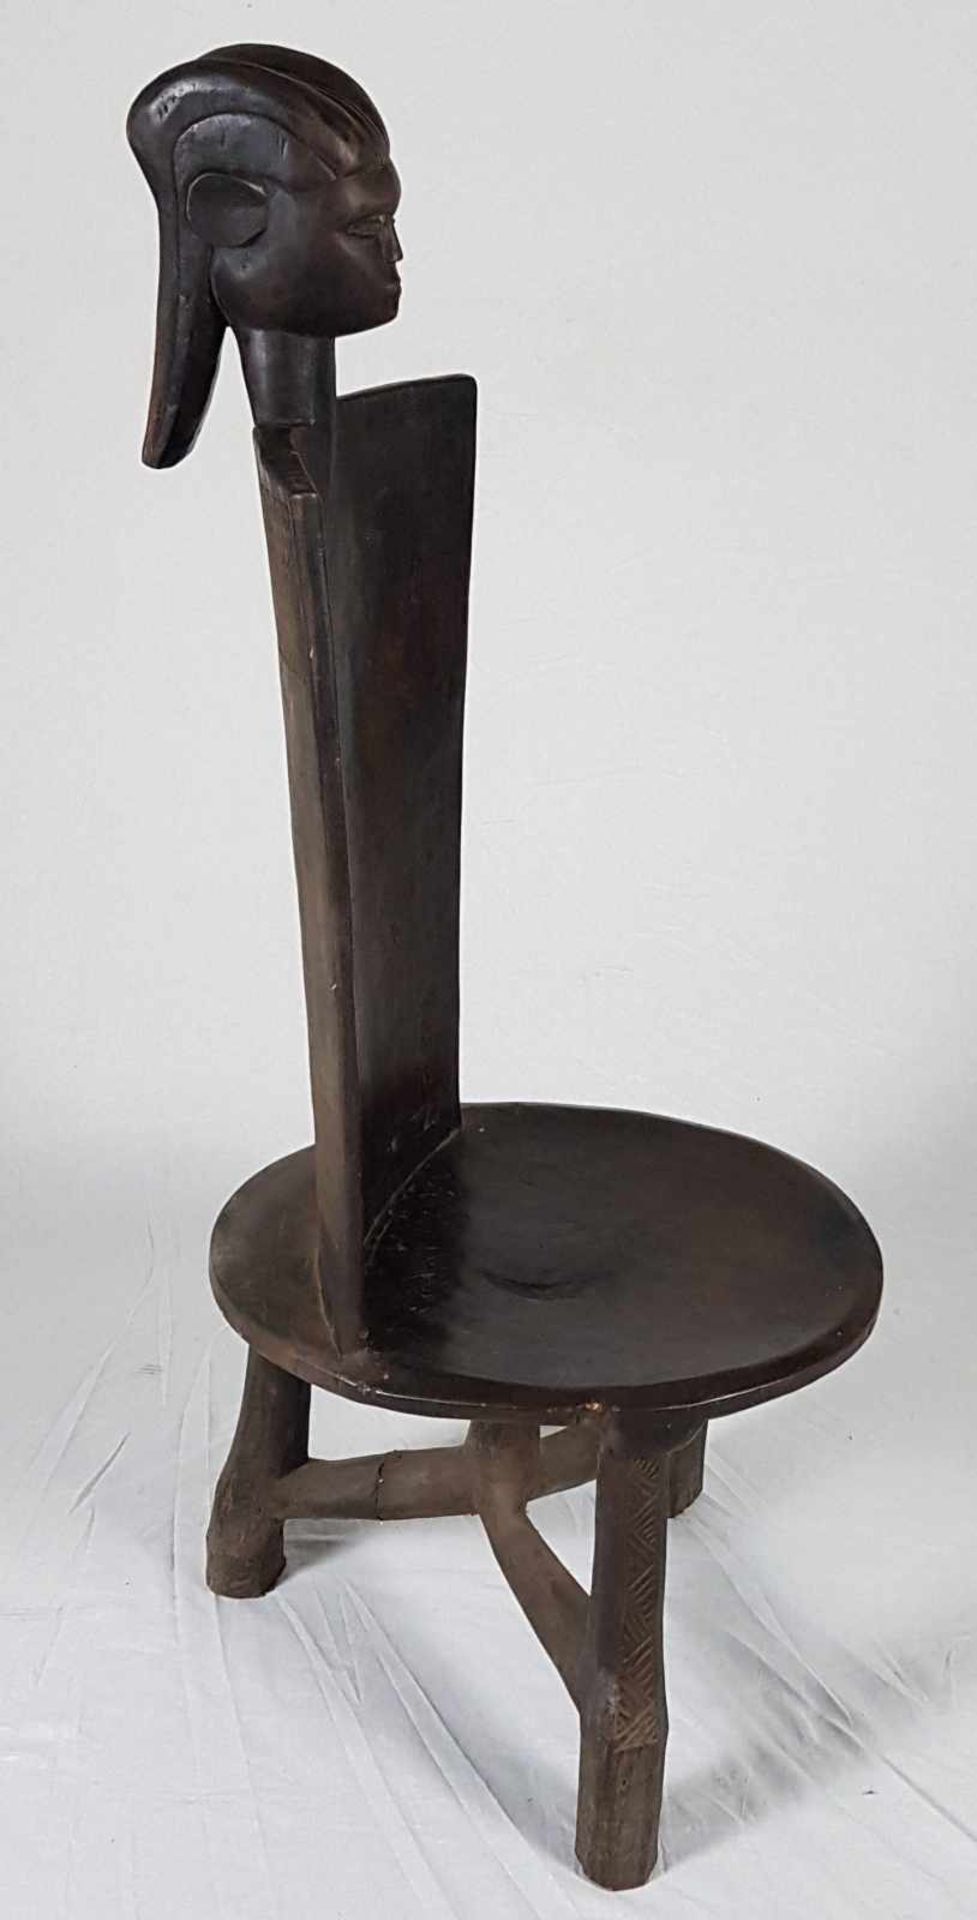 Stuhl des Imperial Chief - Ostafrika,2.Hälfte 20.Jhs,Holz geschnitzt,ca.140x55cm,Gewicht ca.14kg - Bild 4 aus 6